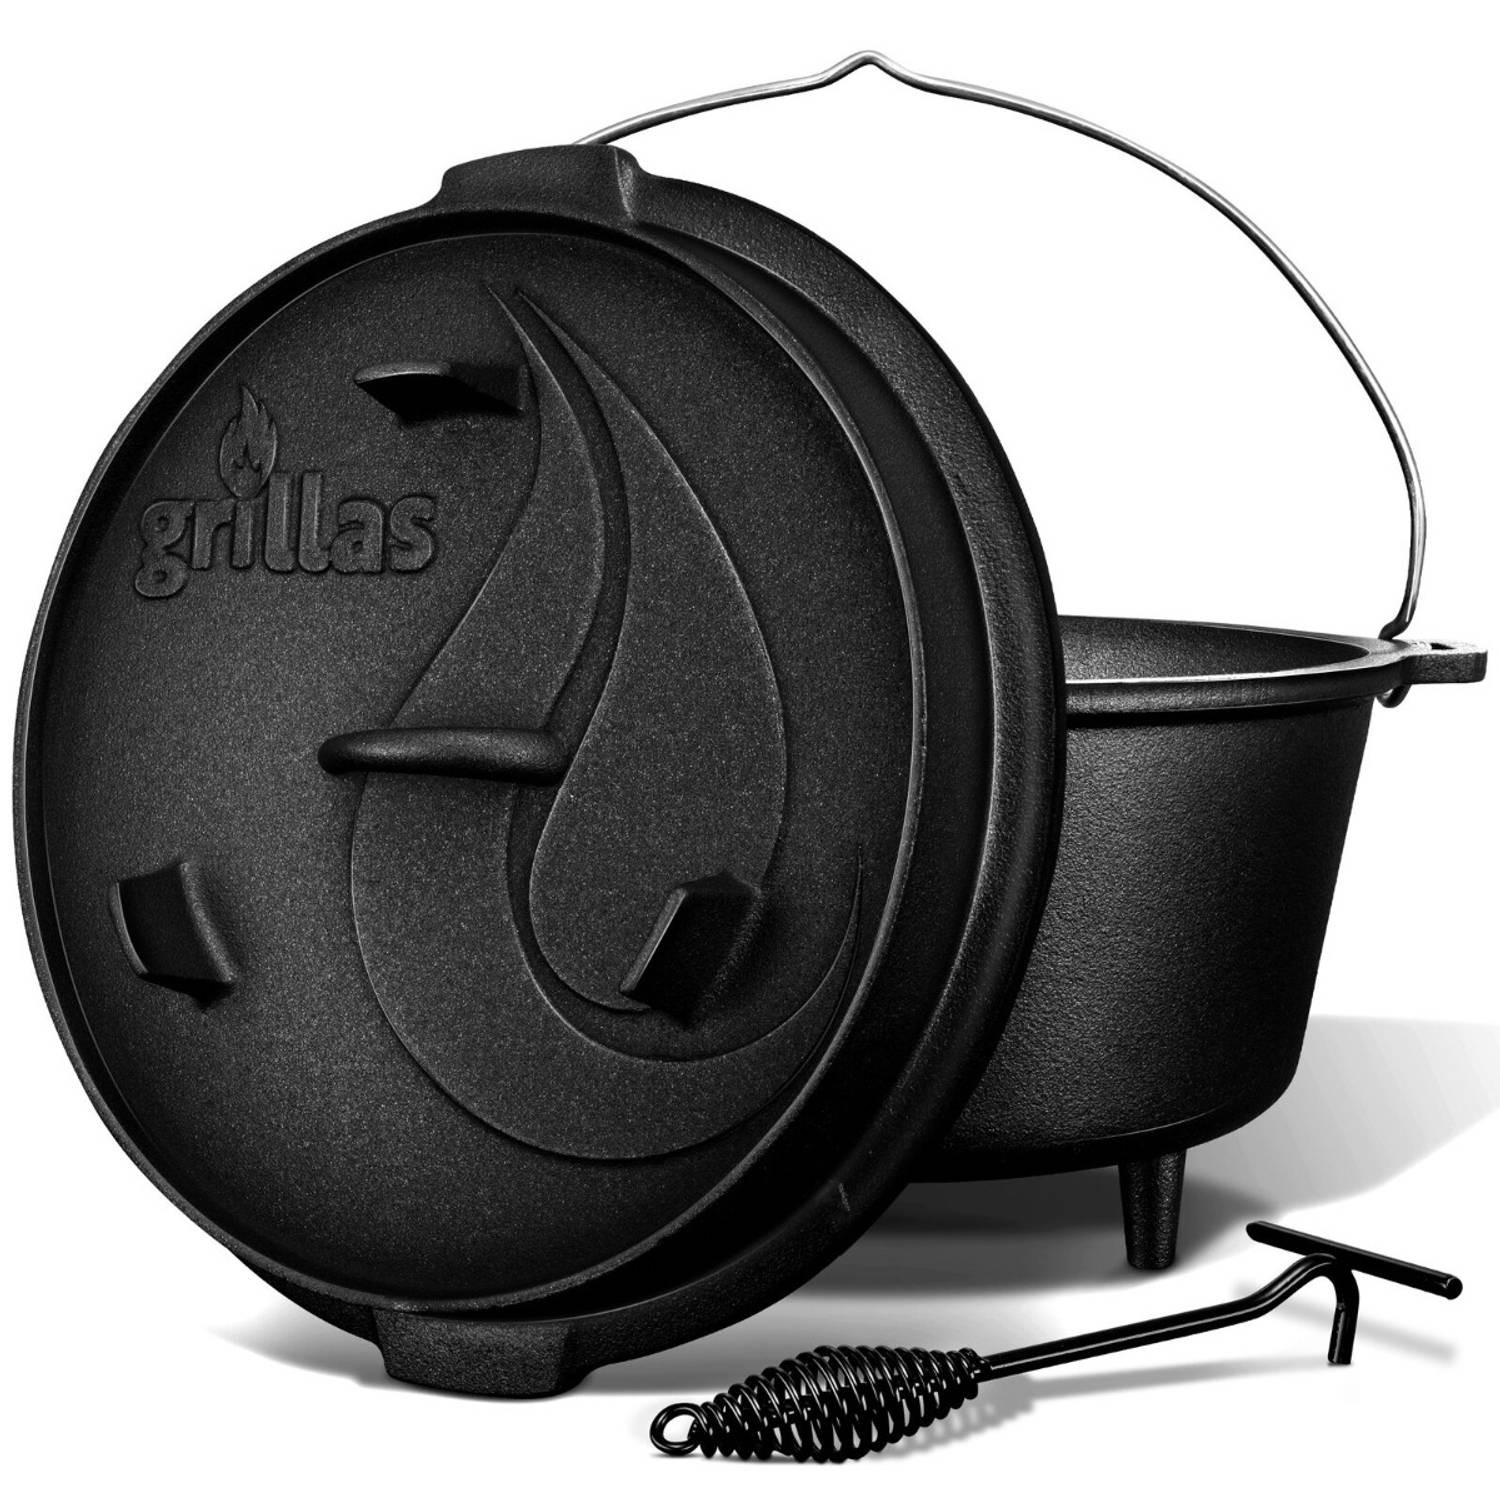 Grillas- Dutch Oven, 9L, BBQ pan, gietijzer, met pootjes, C